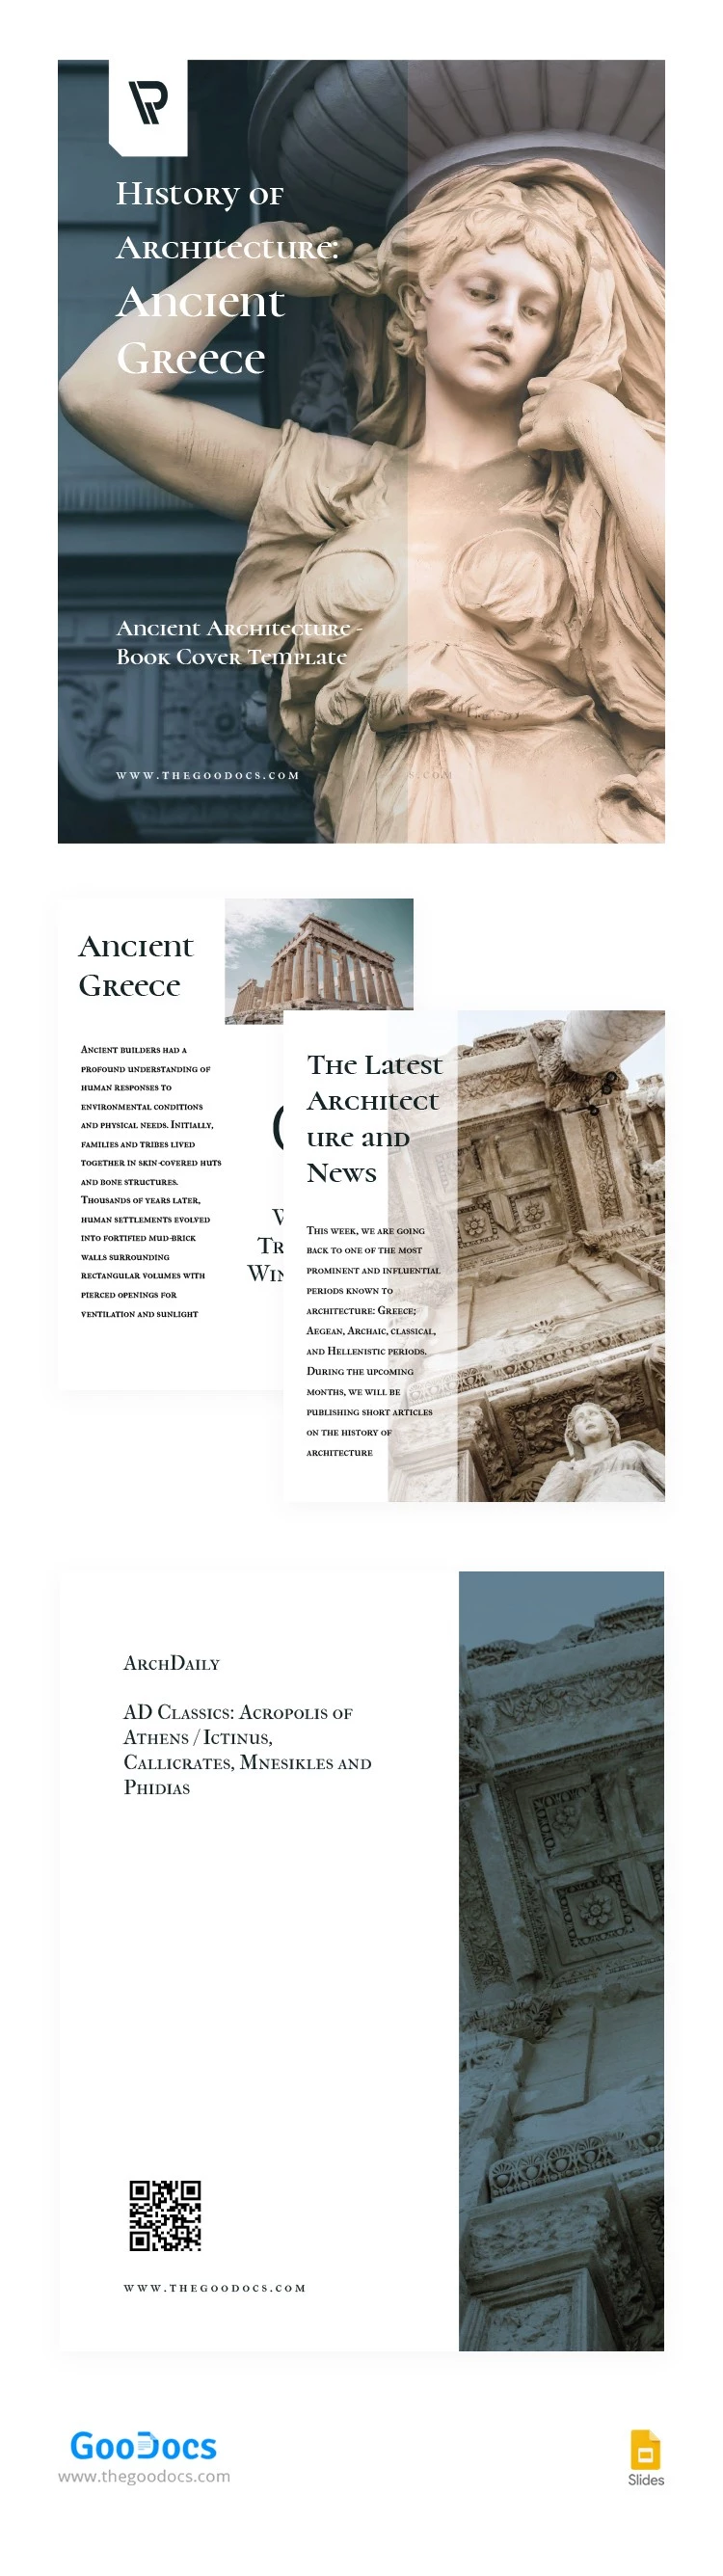 Livre d'architecture antique - free Google Docs Template - 10062764